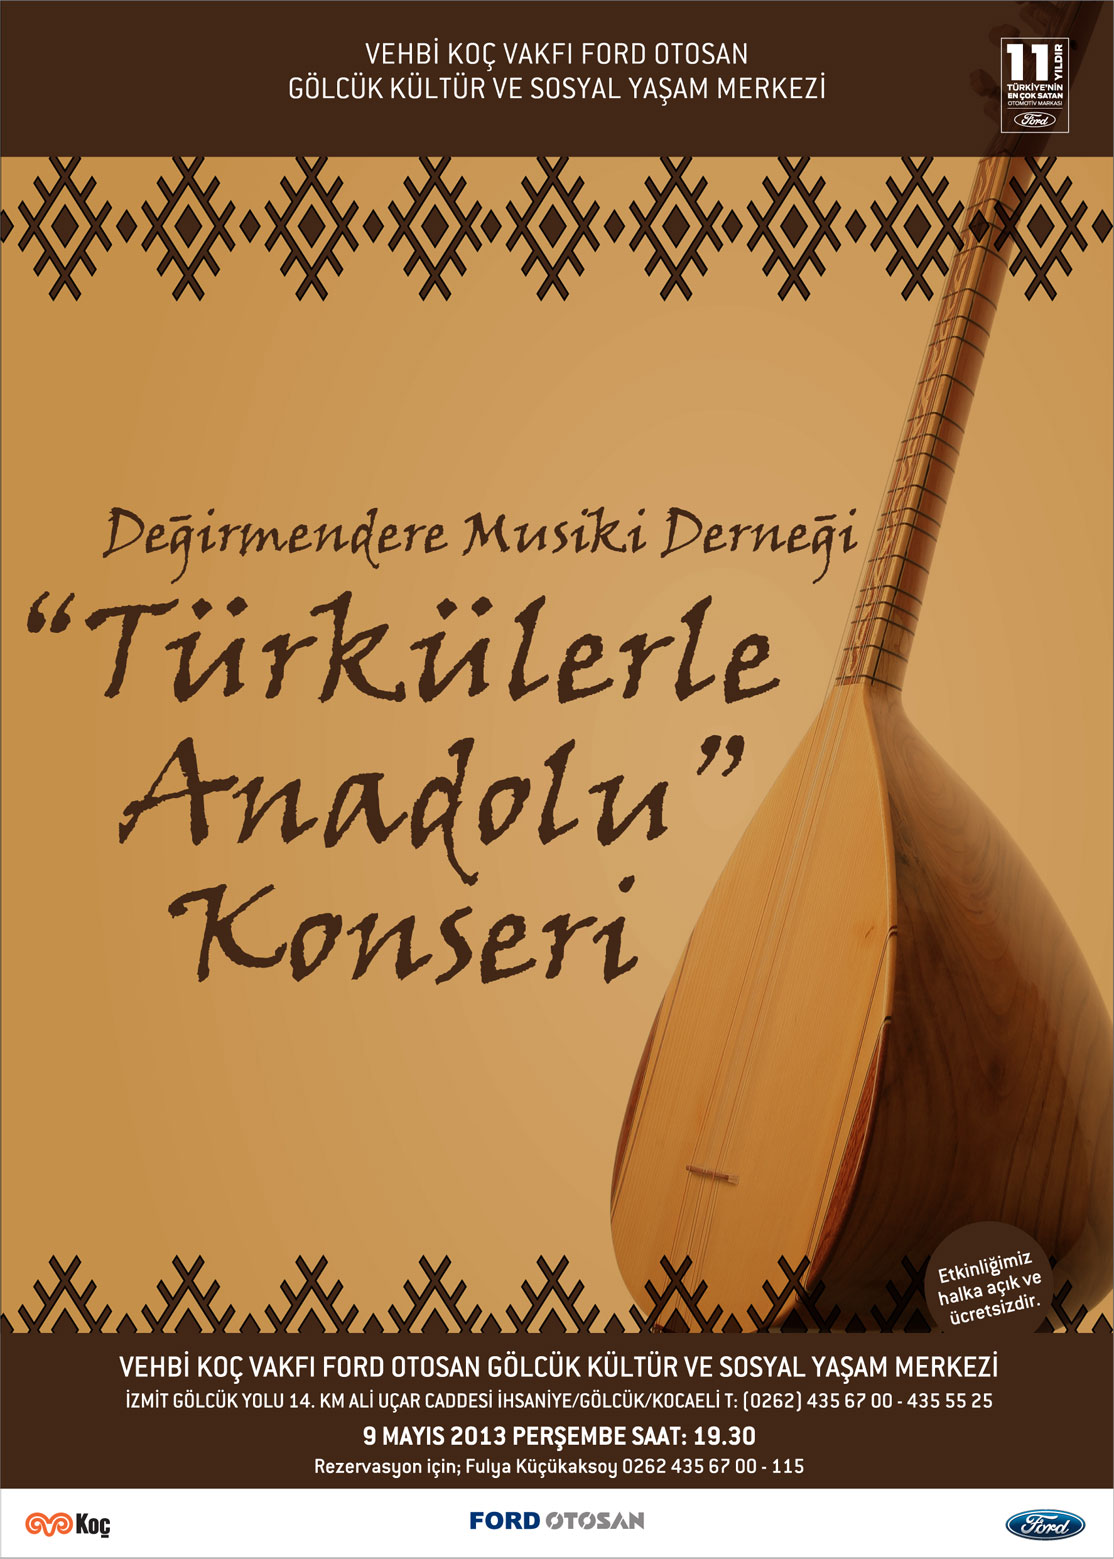 Turkulerle-Anadolu-Konseri